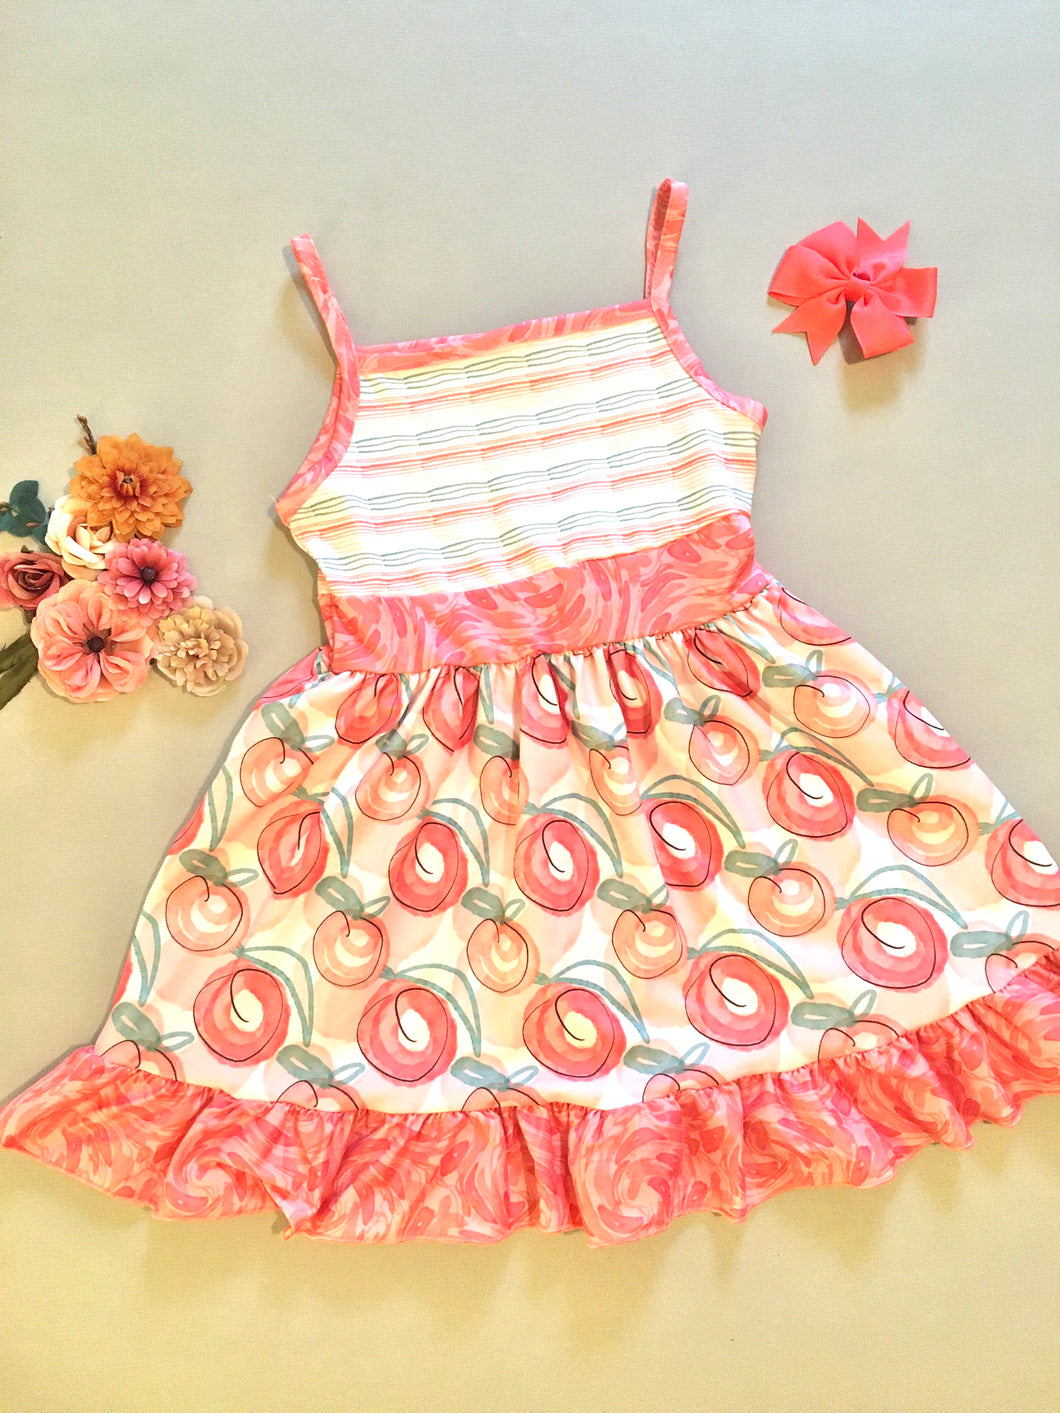 Peachy Keen Dress